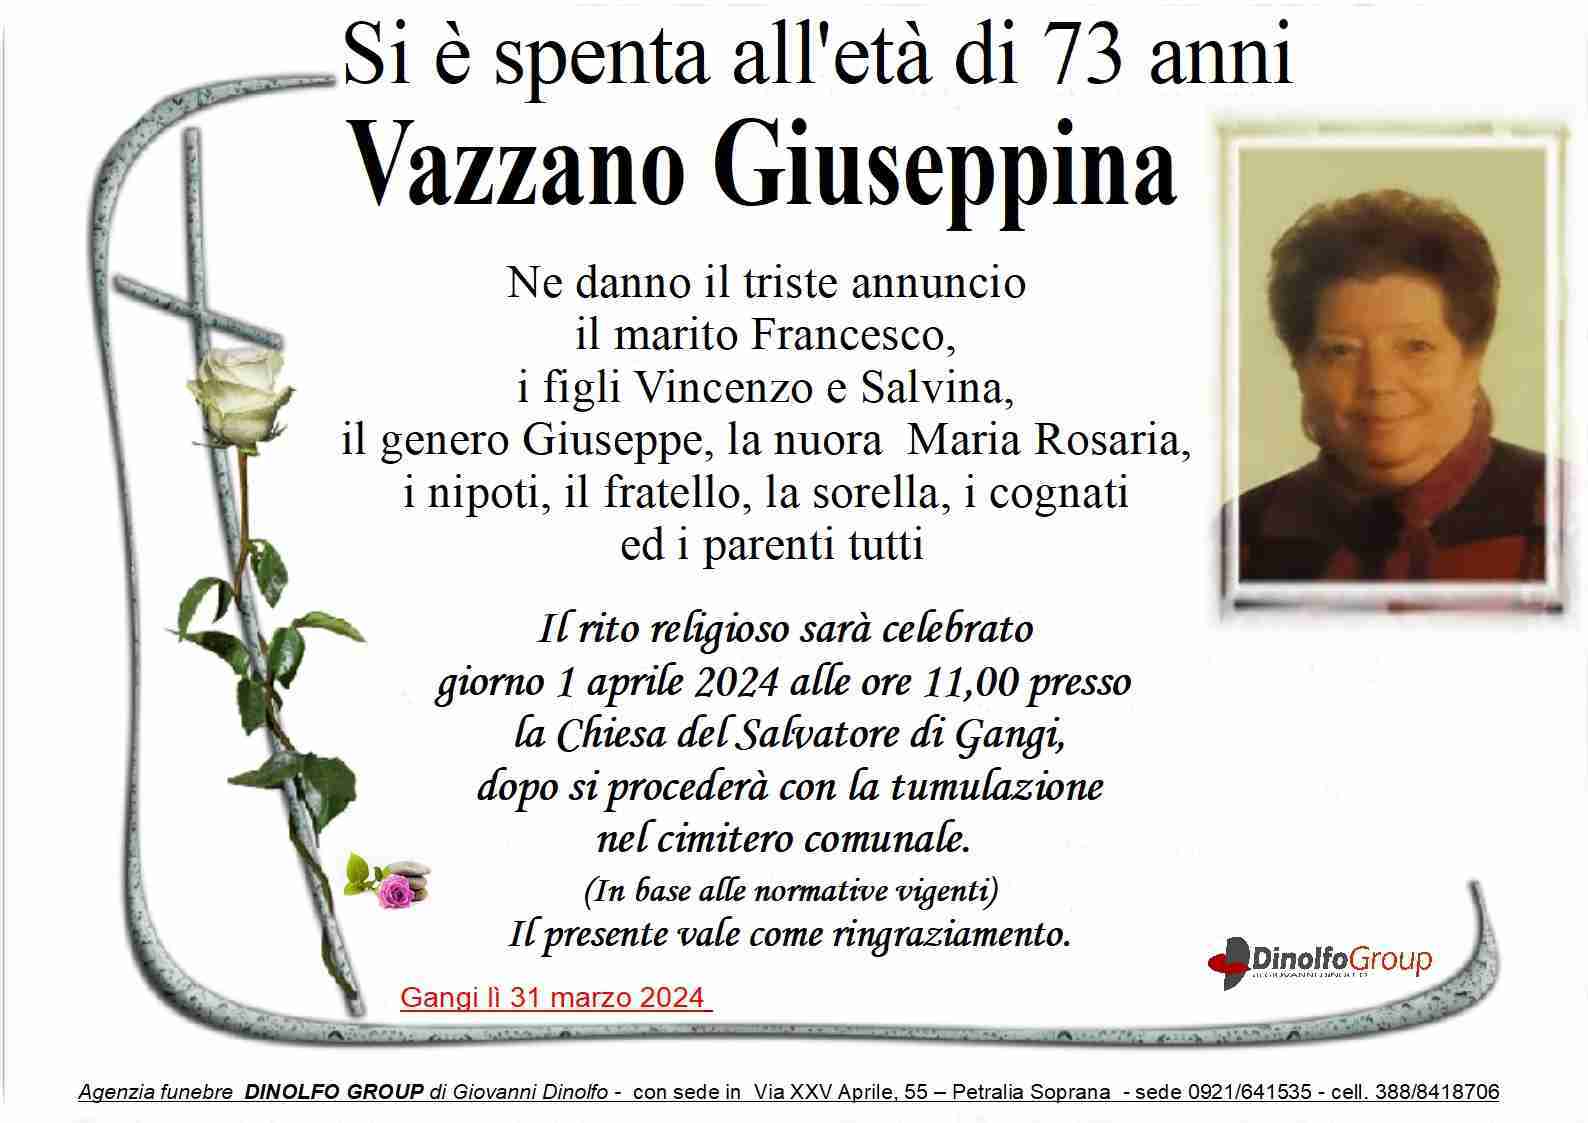 Giuseppina Vazzano